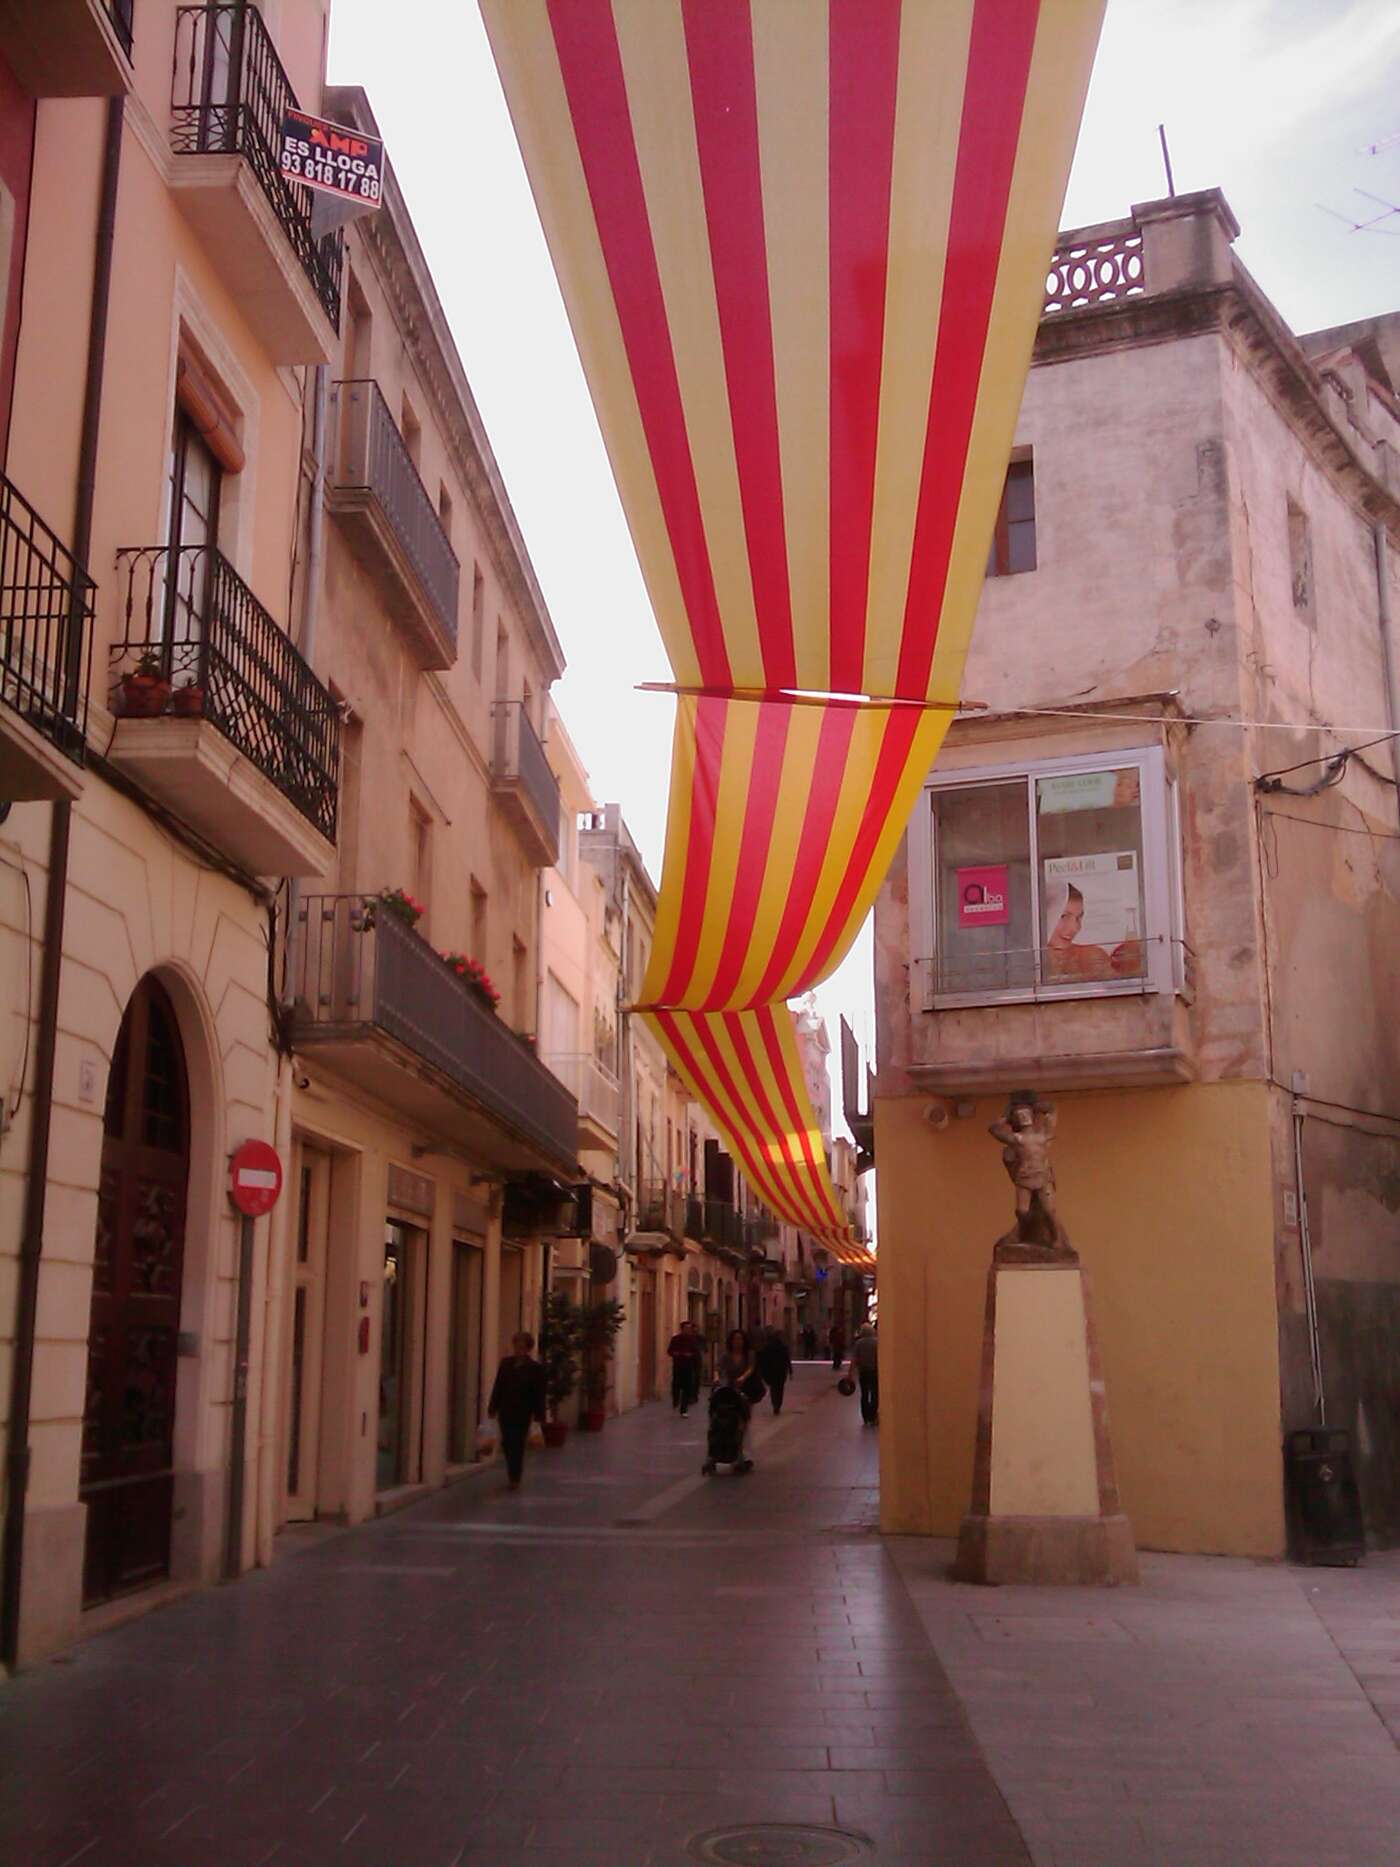 Auf der Hauptstraße - Catalunya weit und breit!